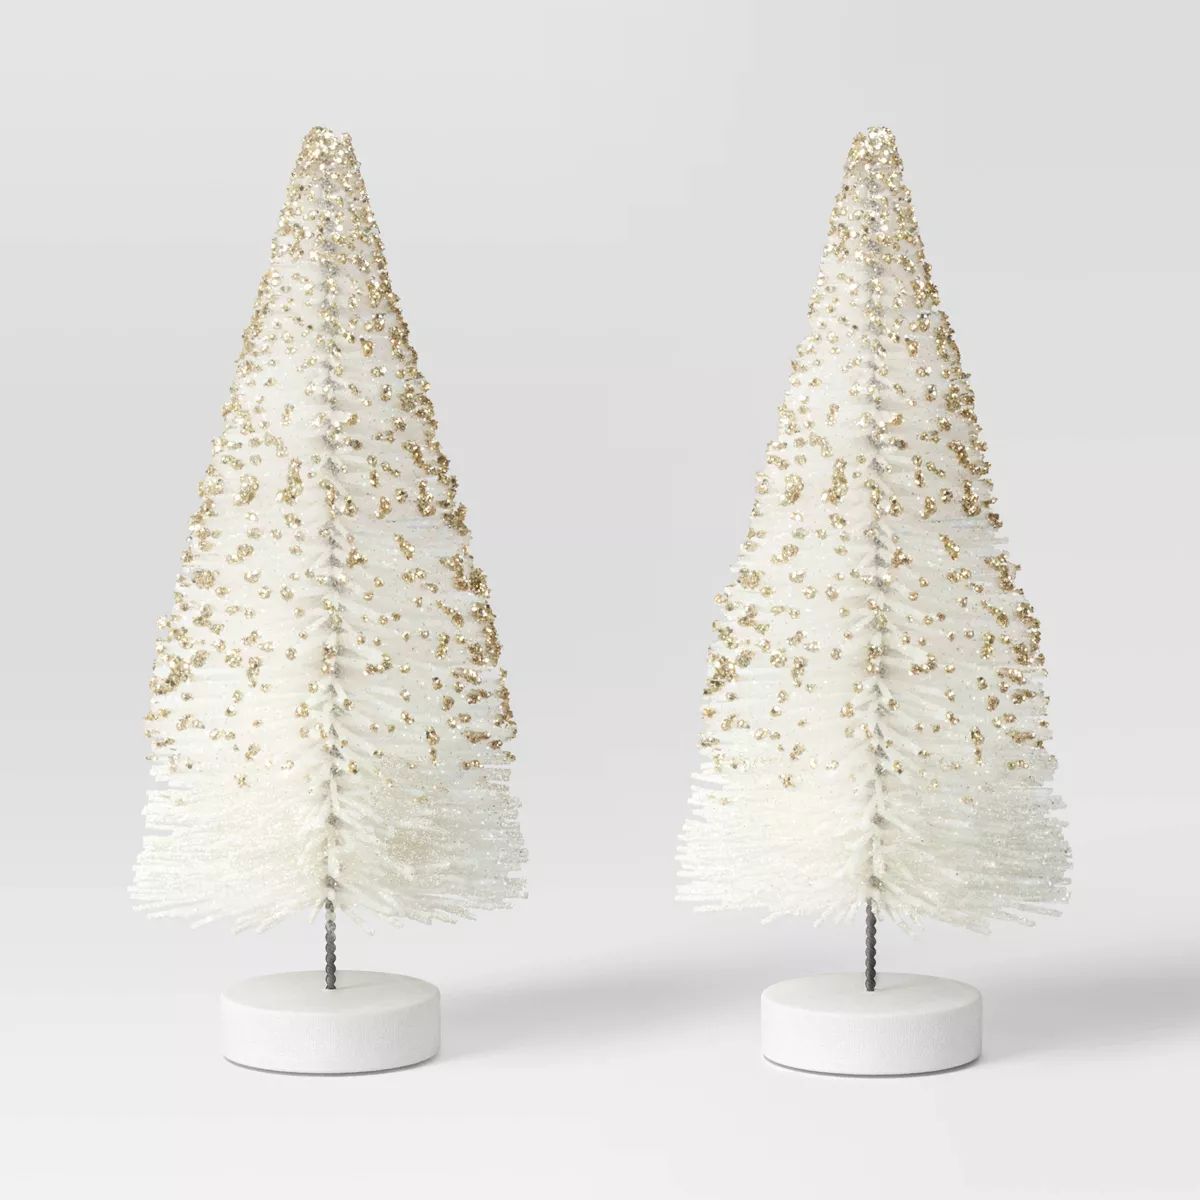 2pc 6" Glittered Sisal Christmas Bottle Brush Tree Set - Wondershop™ White | Target